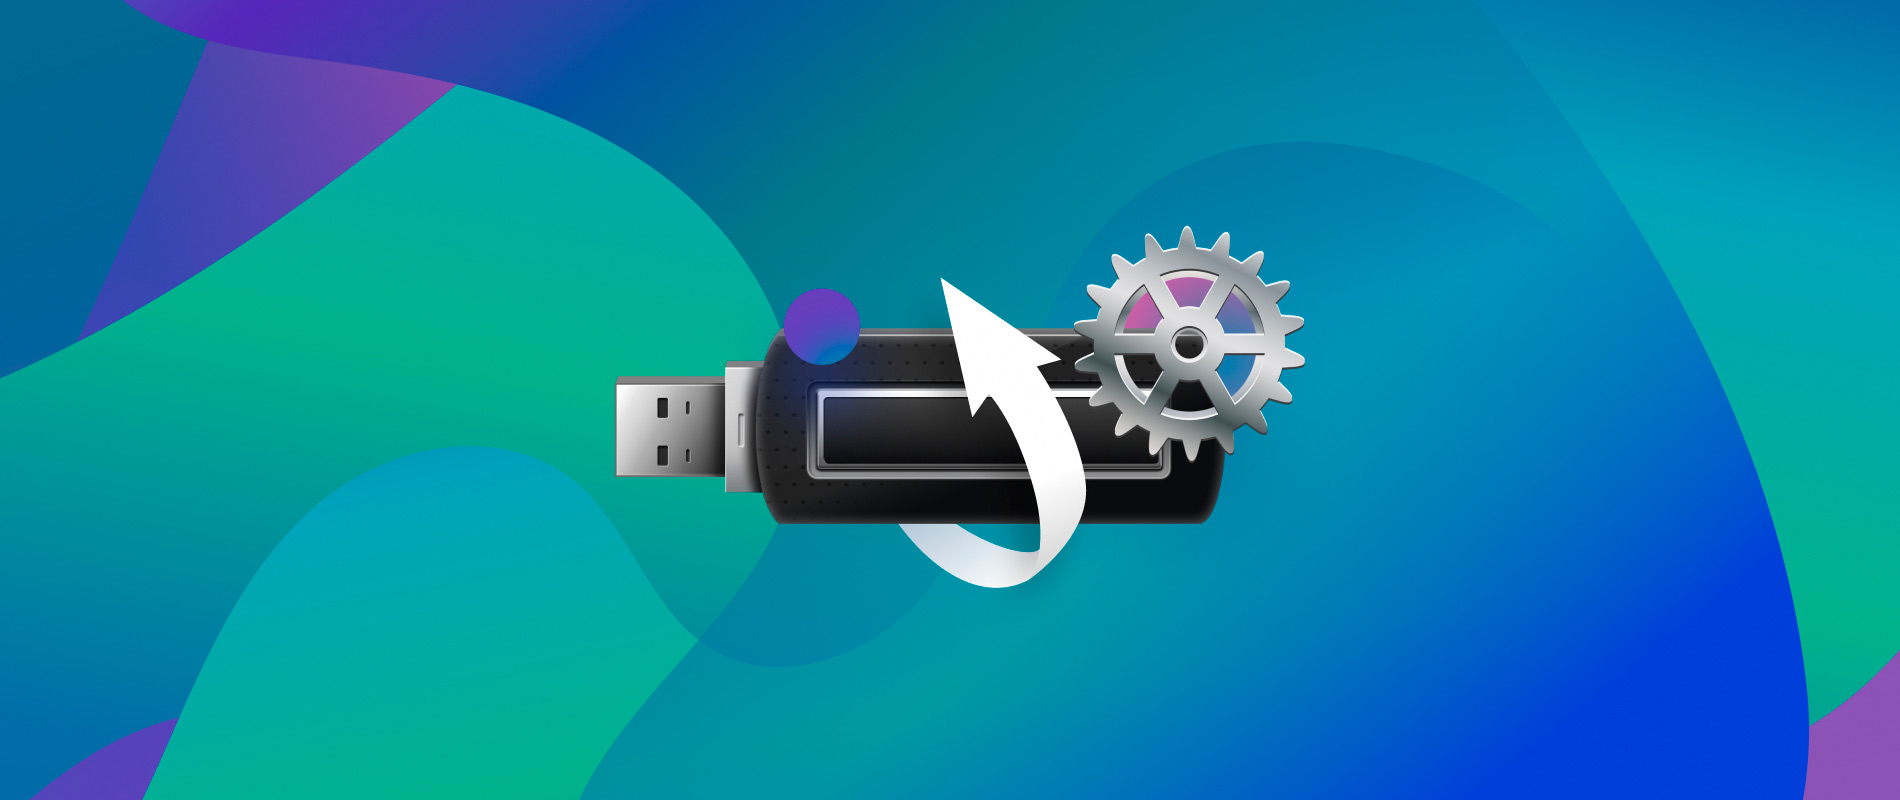 flash drive repair for mac